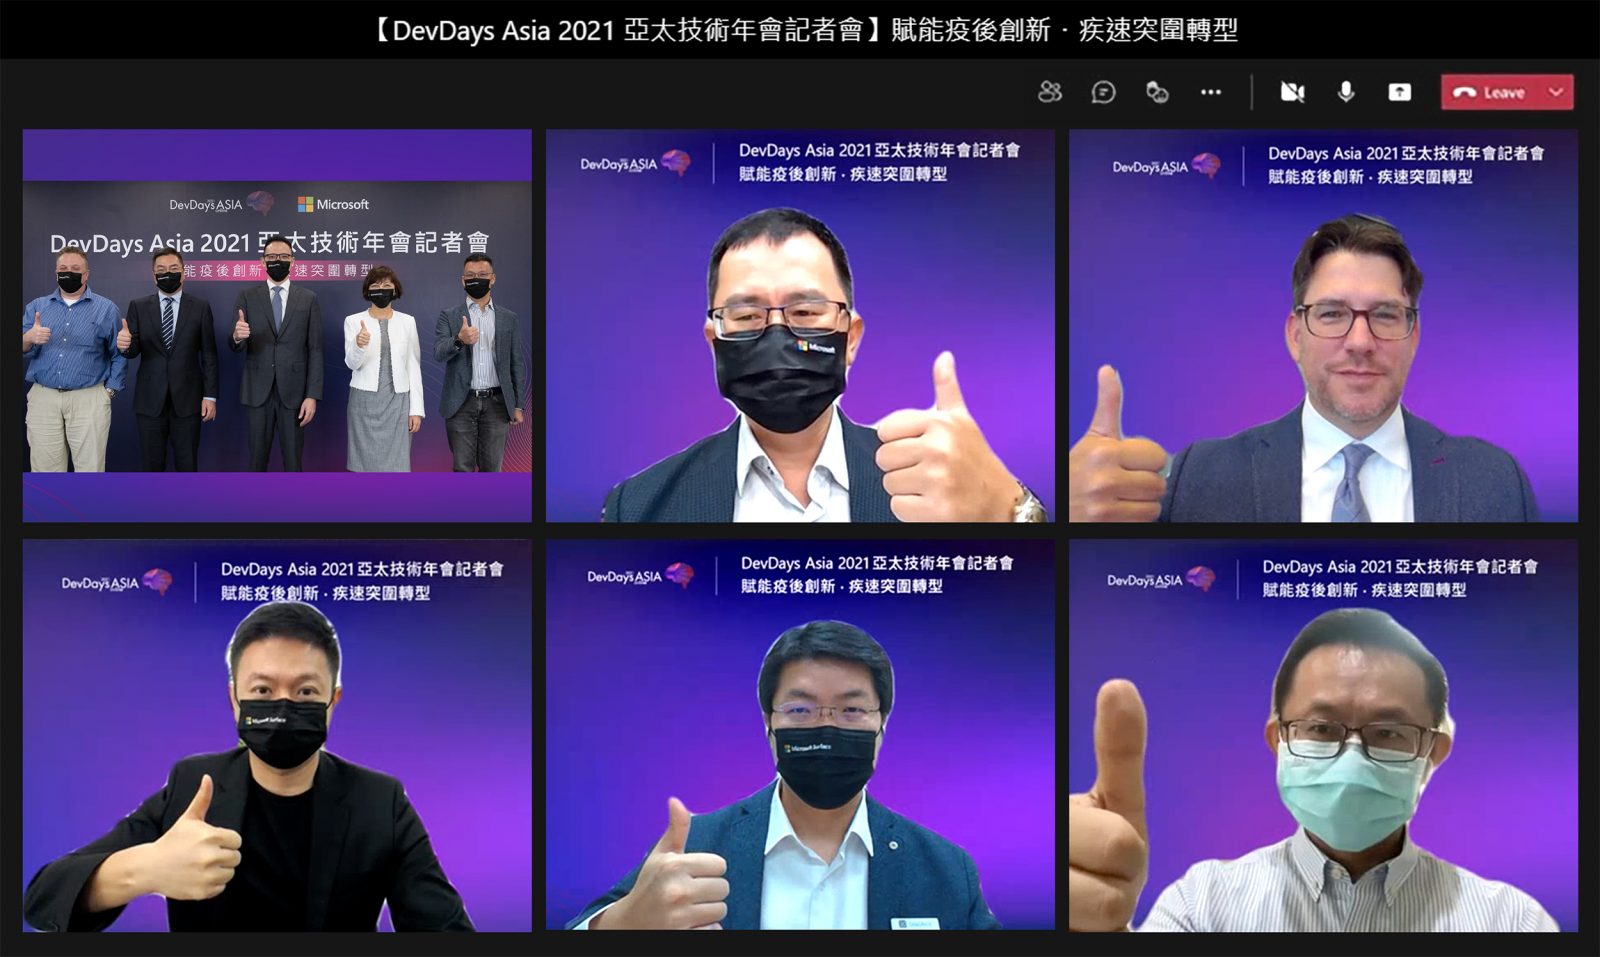 由經濟部指導、經濟部工業局與臺灣微軟主辦的「DevDays Asia 2021 Online 亞太技術年會」於 8 月 11 日（三）至 8 月 13 日（五）以「賦能創新．疾速突圍」為題，線上盛大登場，微軟也特別於今日舉辦「DevDays Asia 2021 Online 亞太技術年會線上記者會」。圖片由左上至右下分別為微軟亞洲 Teams 資深工程總監 Dan Stevenson、微軟全球助理法務長及台灣微軟公共暨法律事務部總經理施立成、台灣微軟總經理孫基康、台灣微軟首席營運長陳慧蓉、台灣微軟物聯網卓越中心副總經理李啓後、經濟部工業局副組長顏鳳旗、微軟 Teams Platform 產品行銷總監 Daniel Canning、鉅鋼機械股份有限公司董事長特助陳璟浩、網聯科技股份有限公司執行長林鼎皓、康揚股份有限公司執行長張世楠。